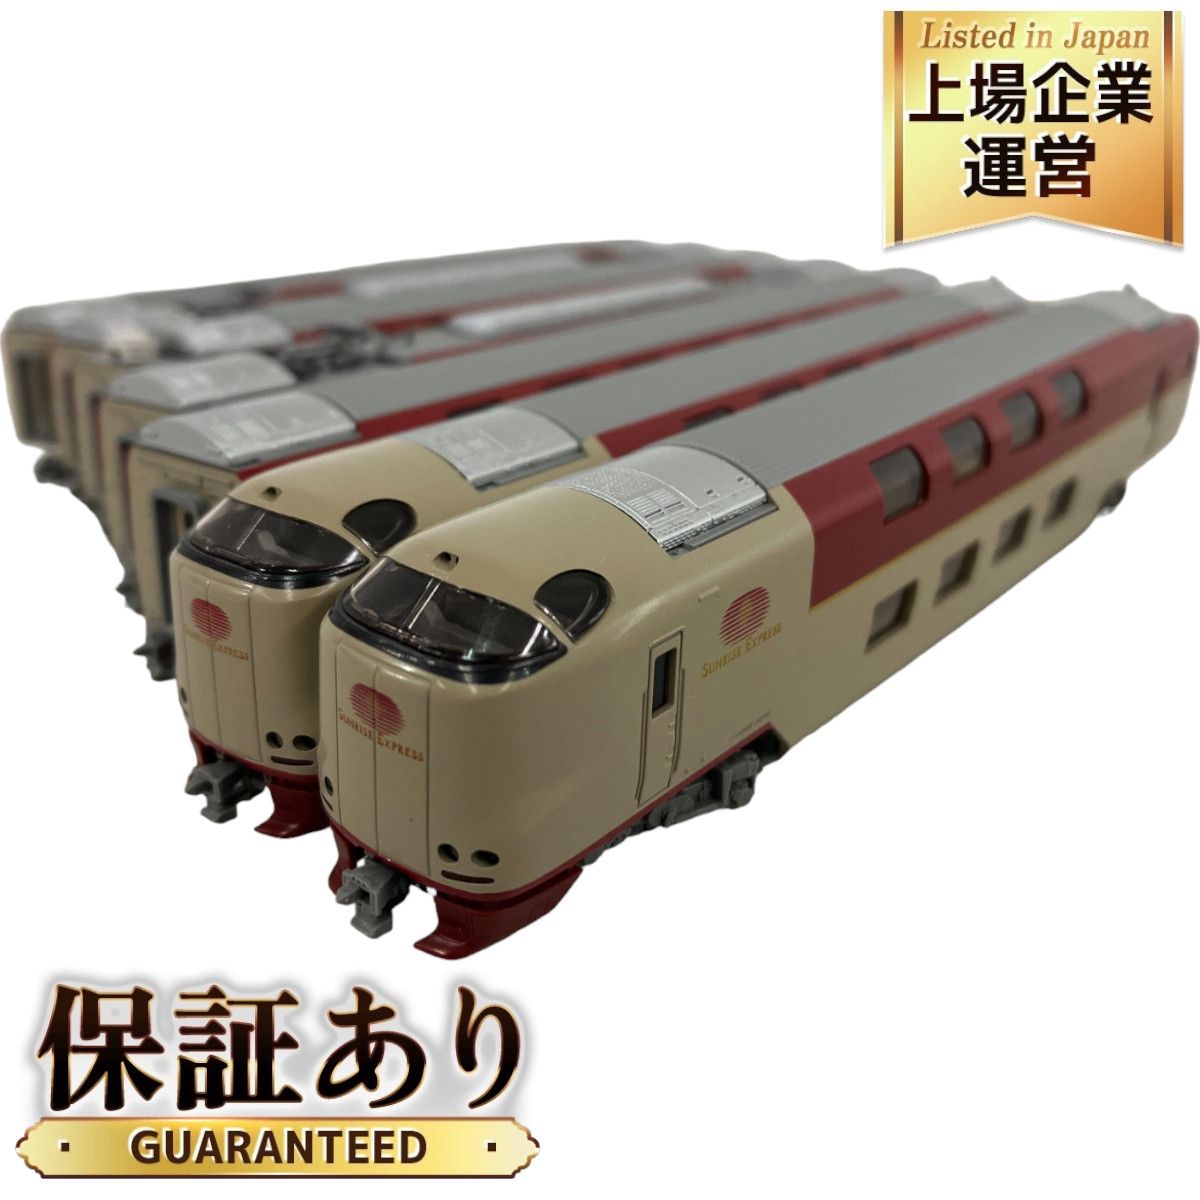 KATO 10-387 285系3000番台 (JR東海)サンライズエクスプレス - 鉄道模型